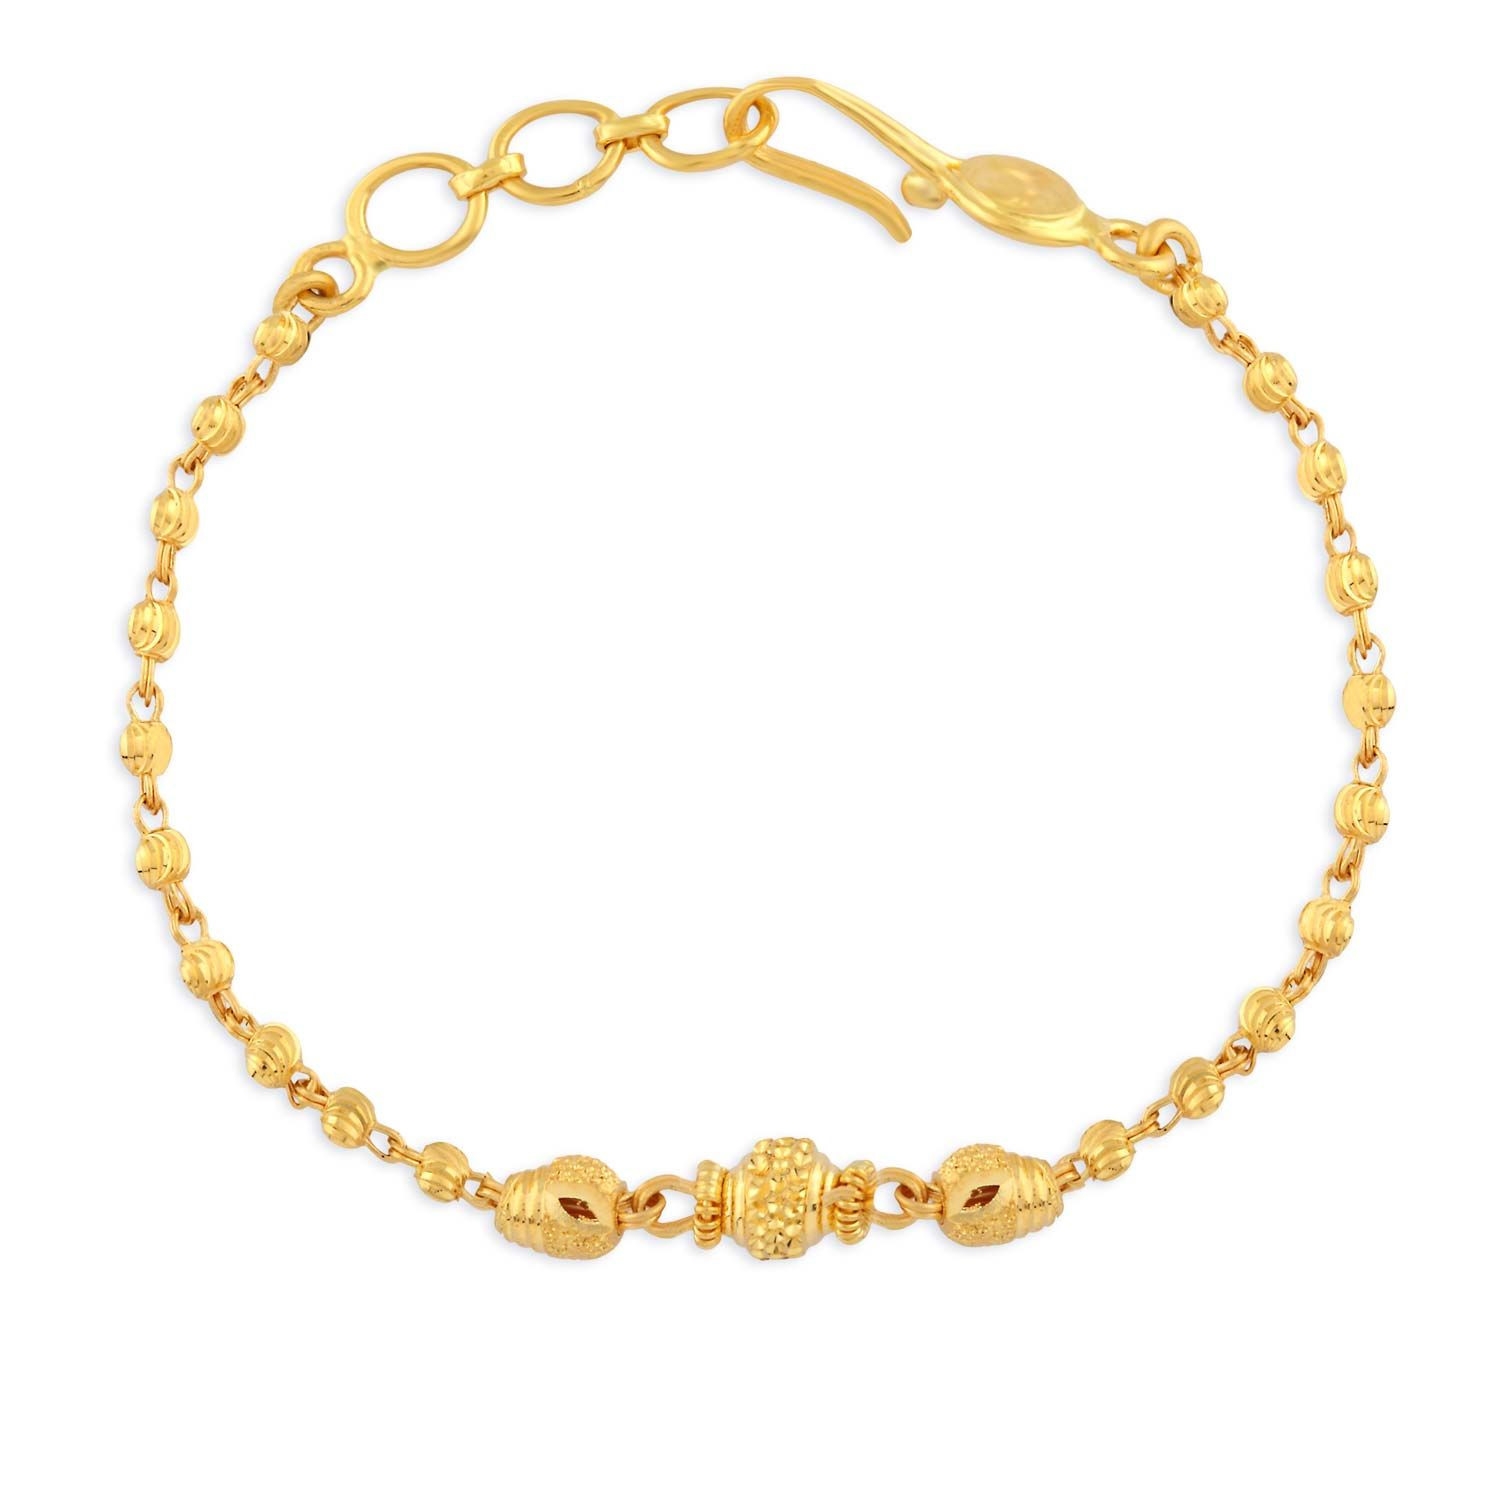 Hot gold bracelet design 8MM jewelry hand 18K side wall chain snake bone  shape | eBay